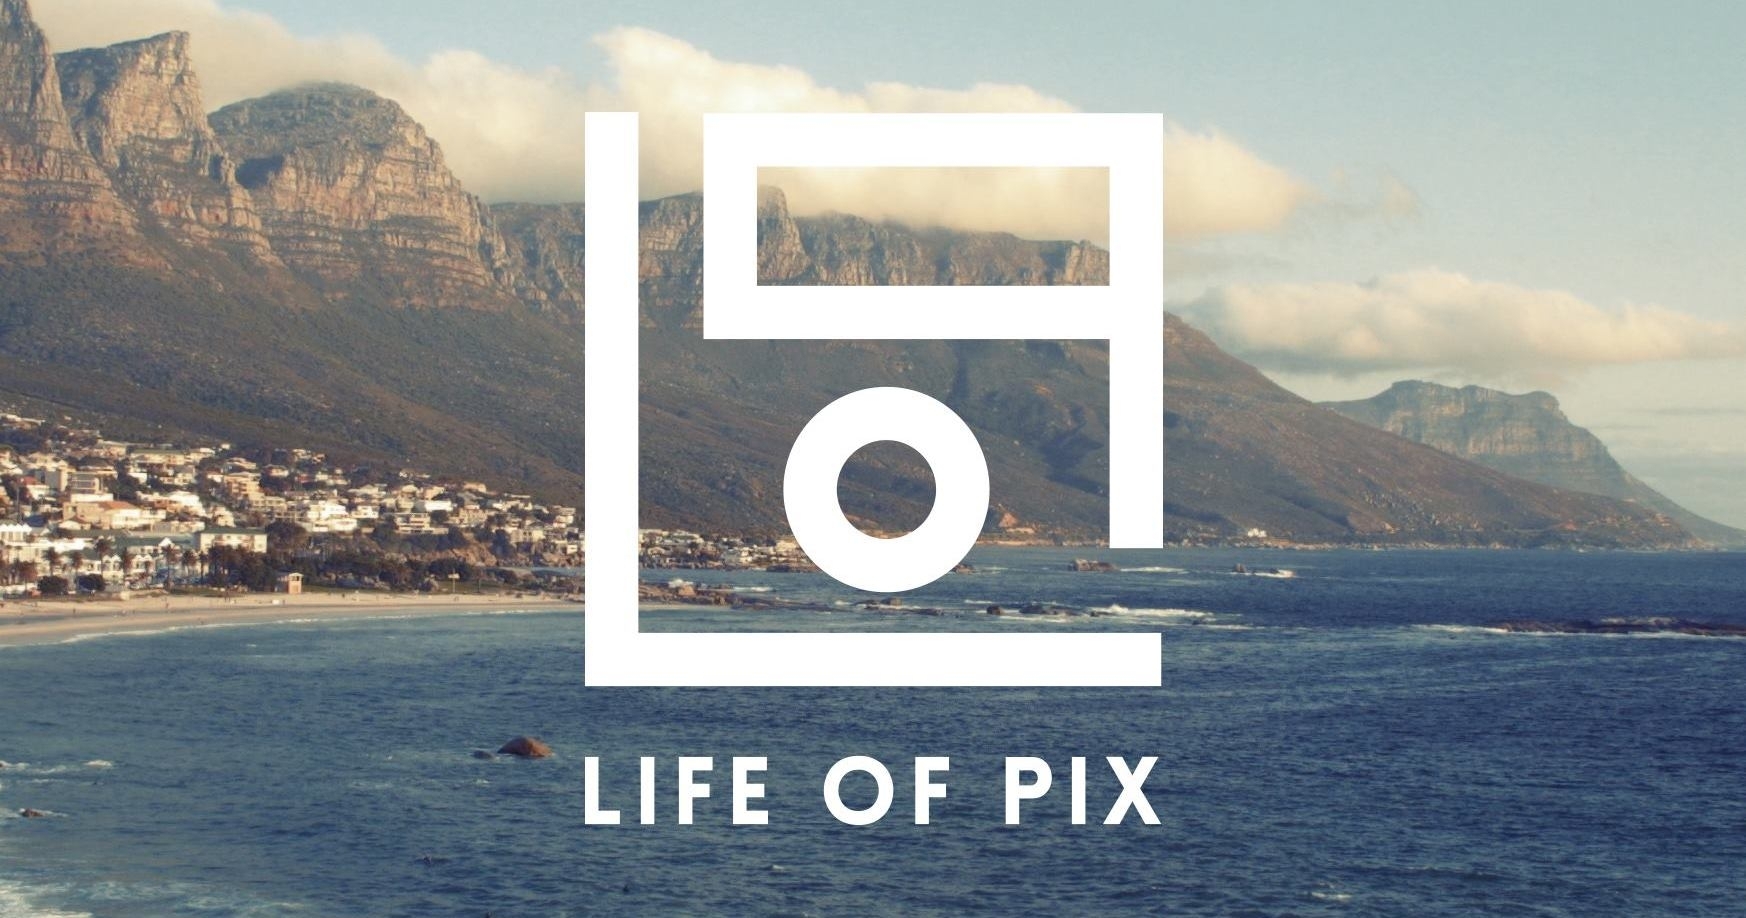 бесплатные изображения для дизайна Life of Pix